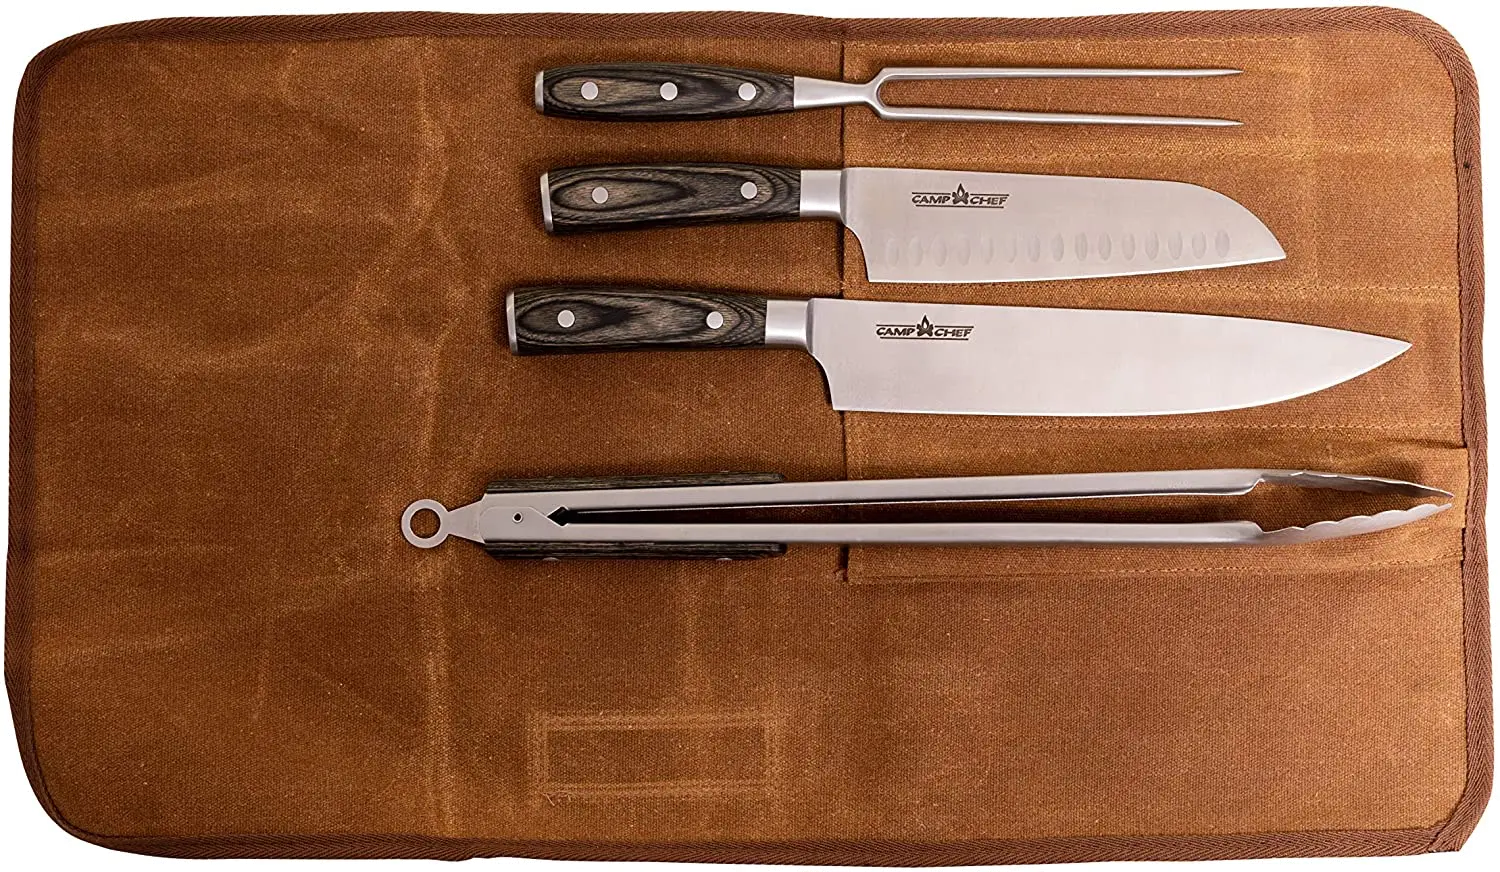 KSET4 Camp Chef Deluxe Carving 4 Piece Knife Set sku KSET4